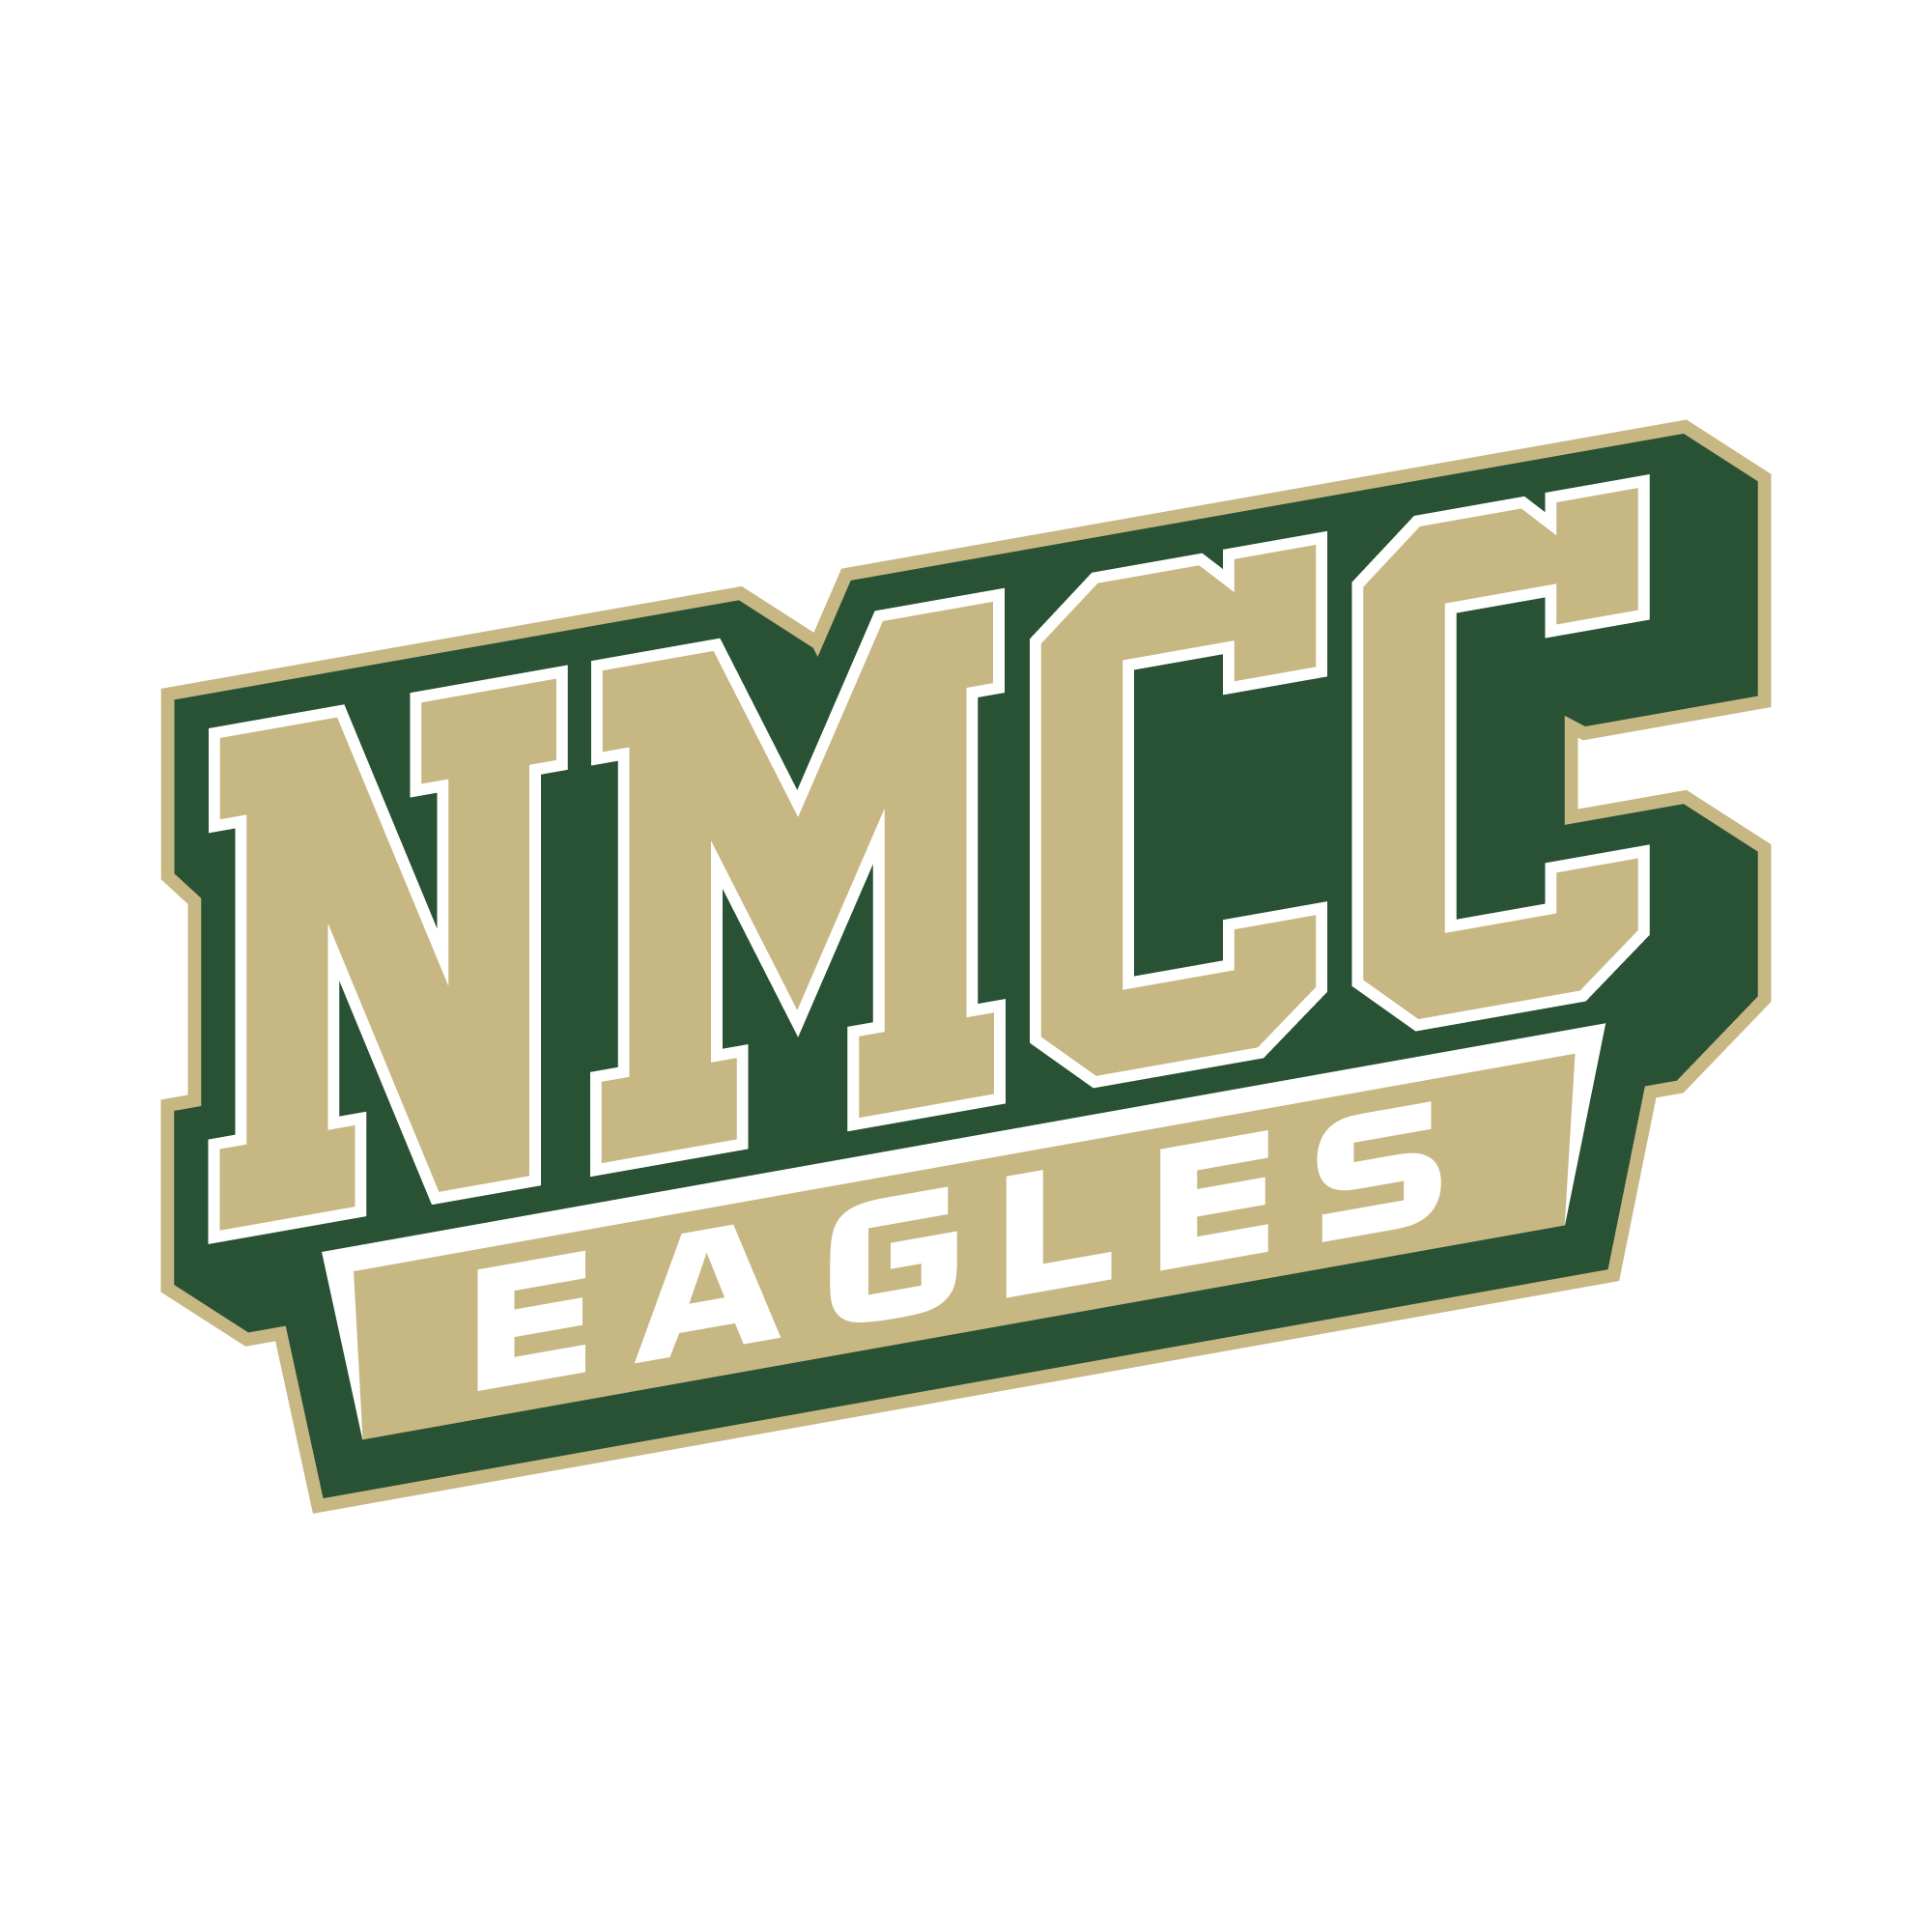 nmcc eagles logo